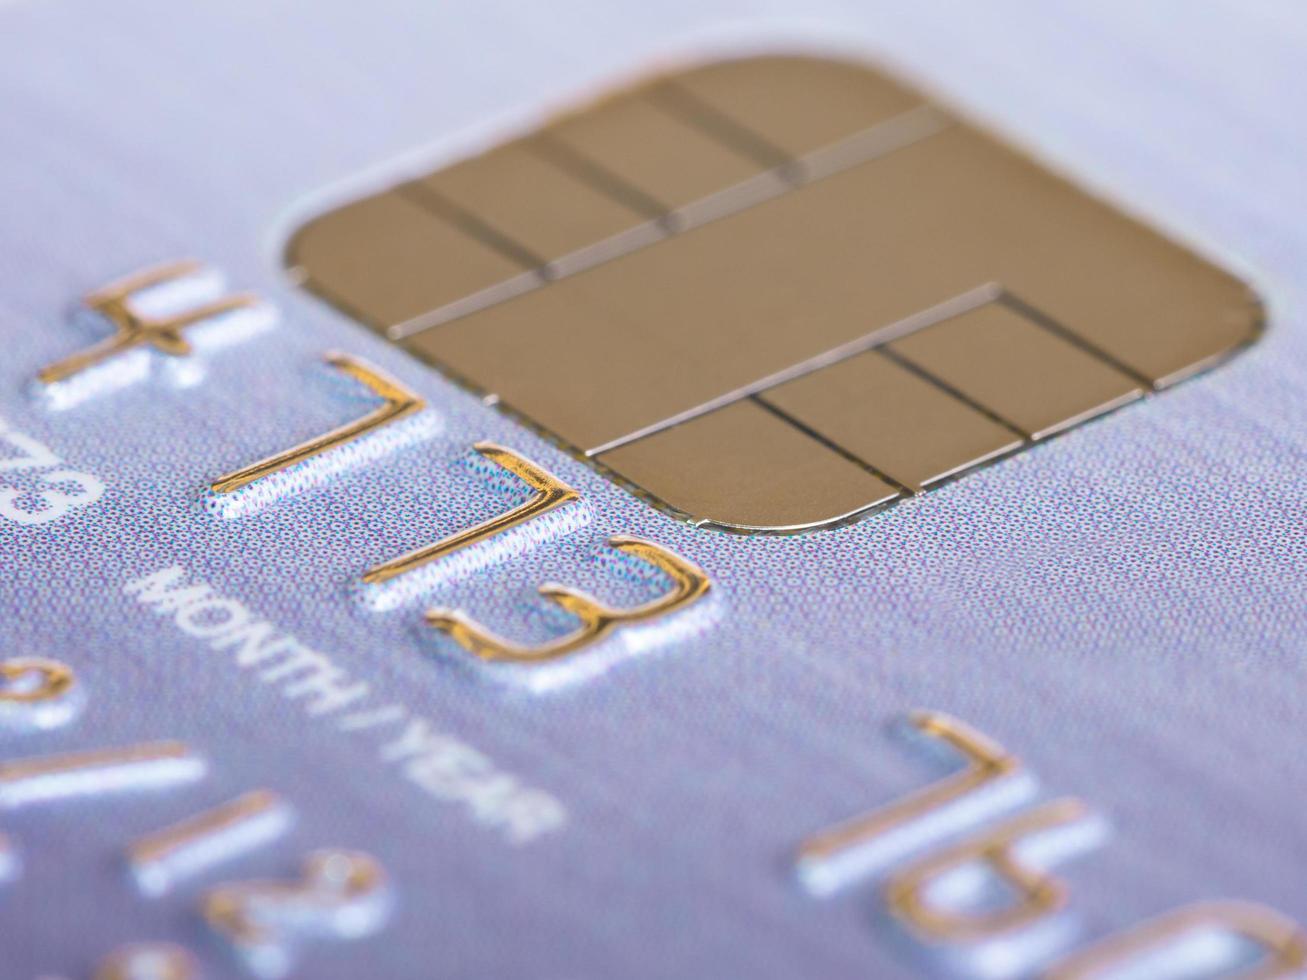 tarjeta de crédito platino con enfoque selectivo de microchip foto